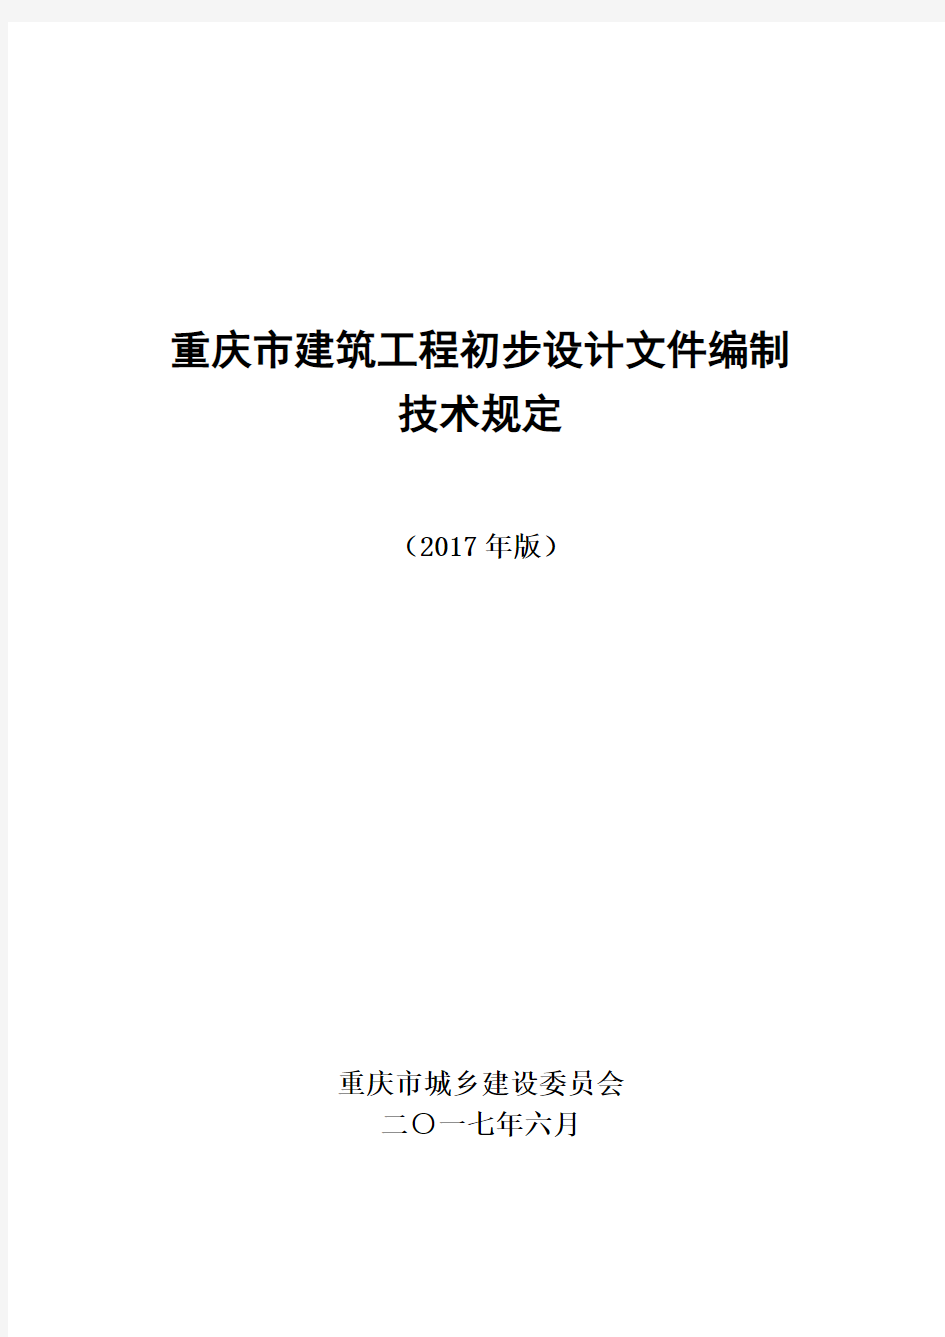 (建筑工程设计)重庆市建筑工程初步设计文件编制技术规定(报批稿2017)